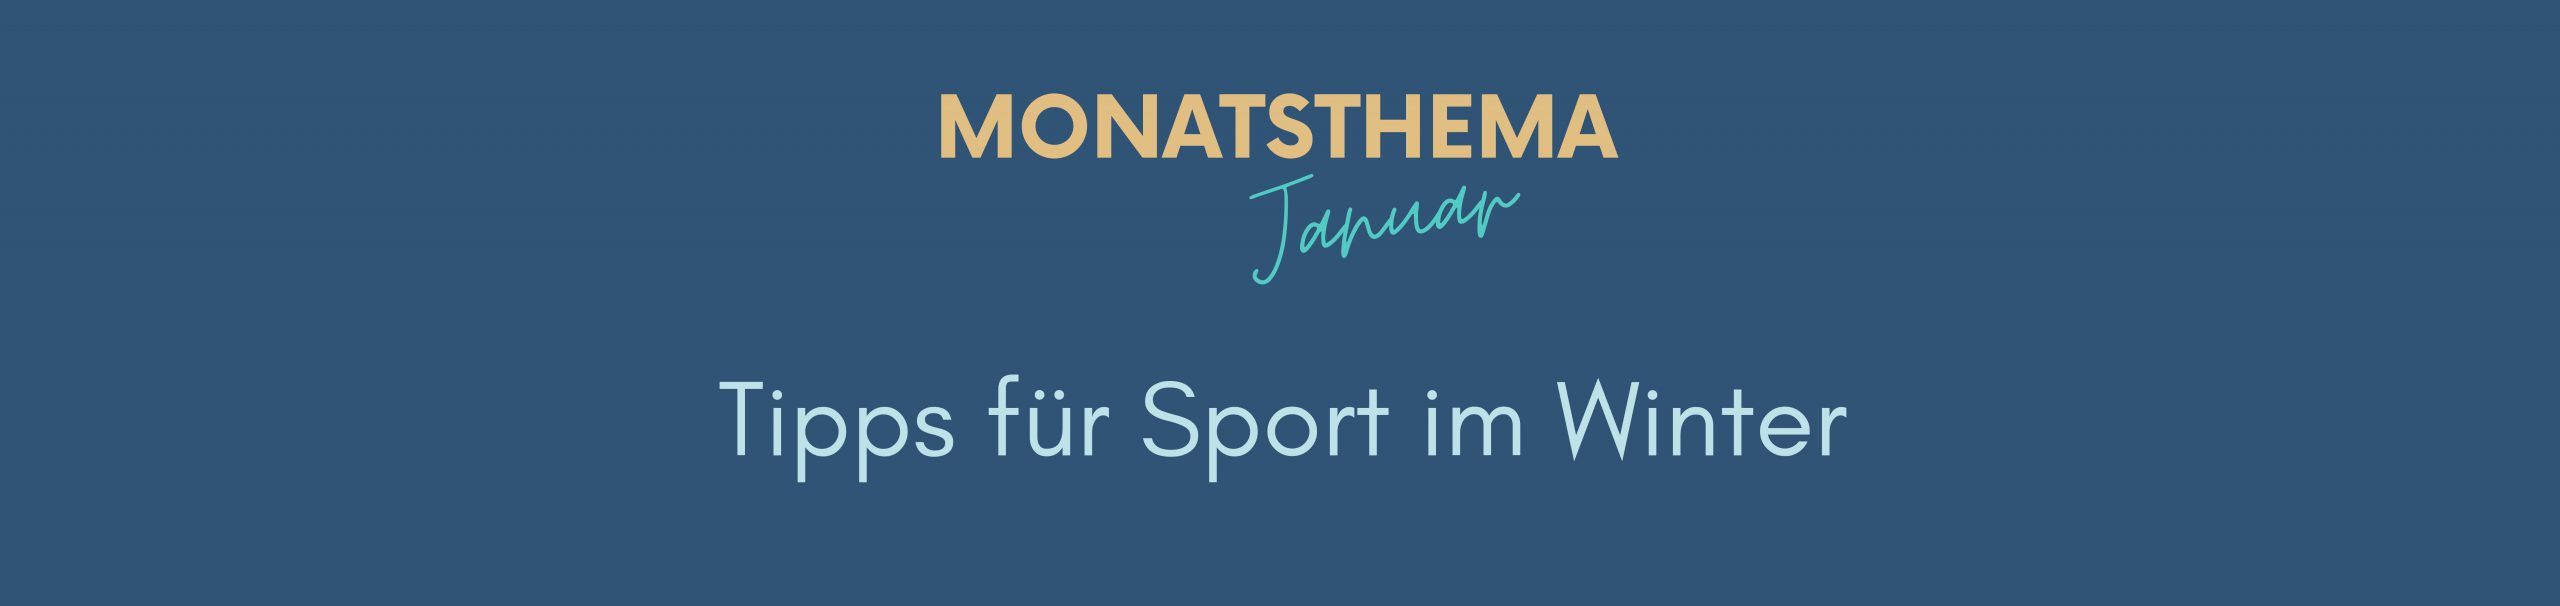 blauer Hintergrund mit Text: Monatsthema Januar, Tipps für Sport im Winter